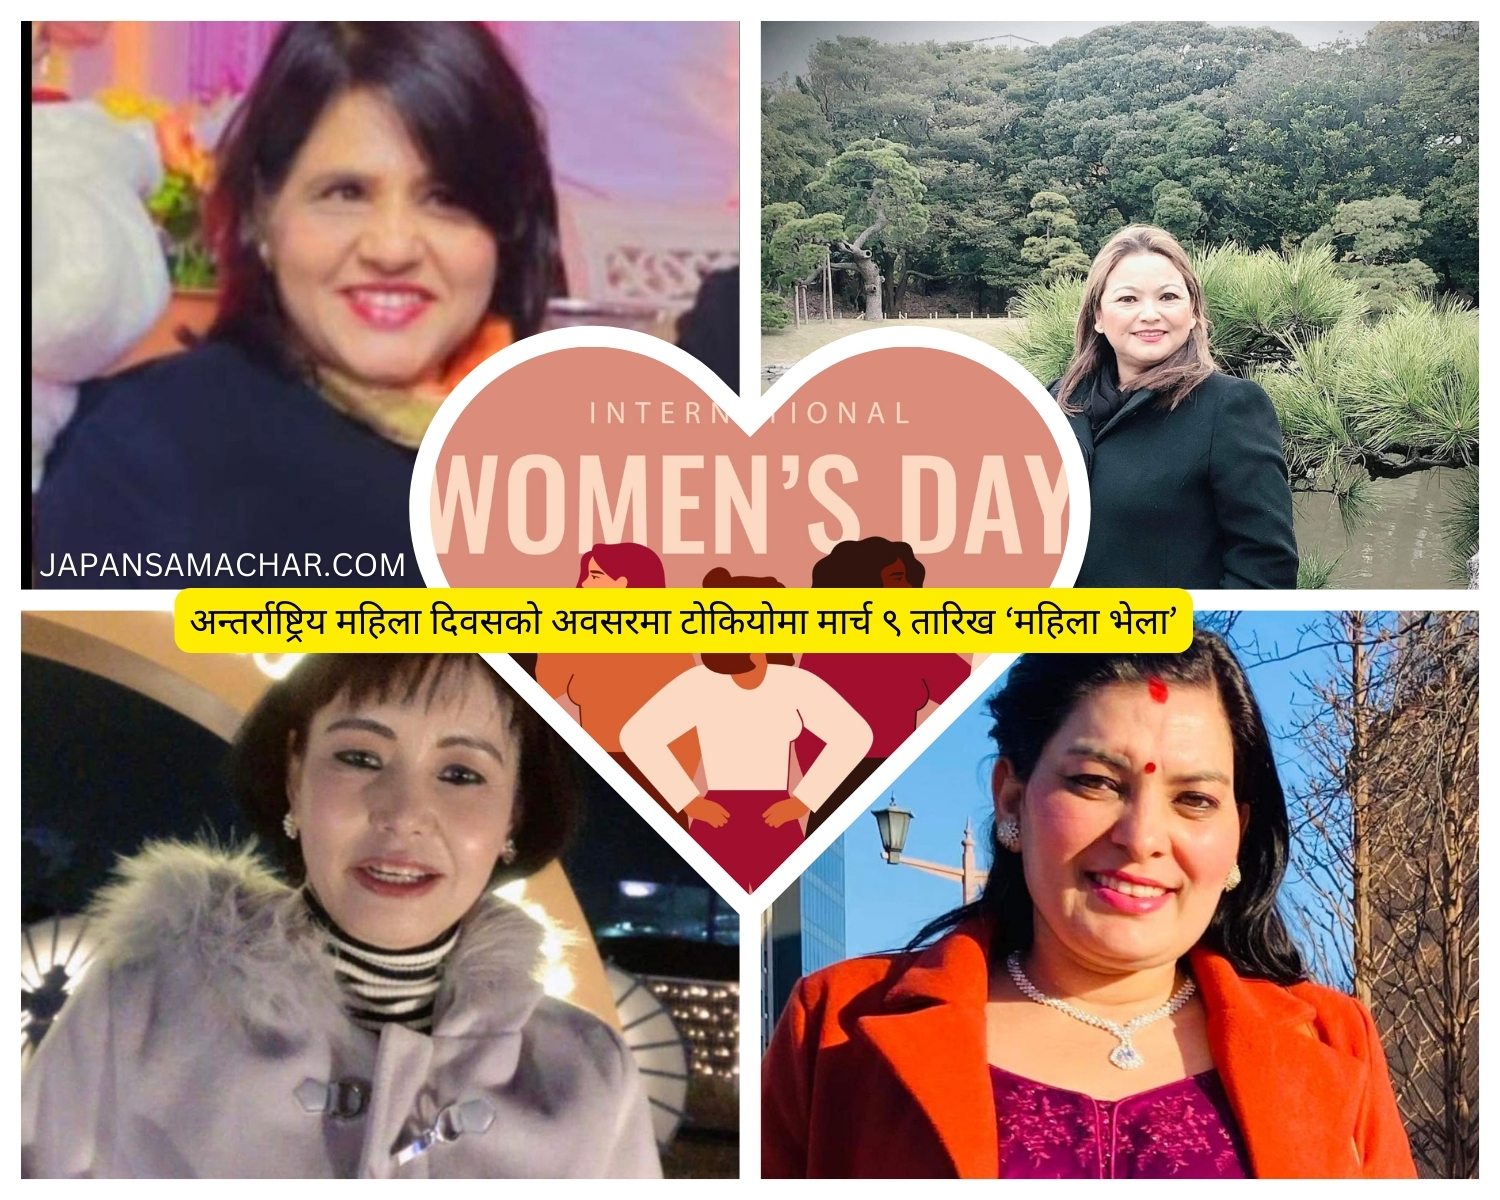 टोकियोमा नारी दिवसको अवसरमा नेपाली महिलाहरुको भेटघाट कार्यक्रम